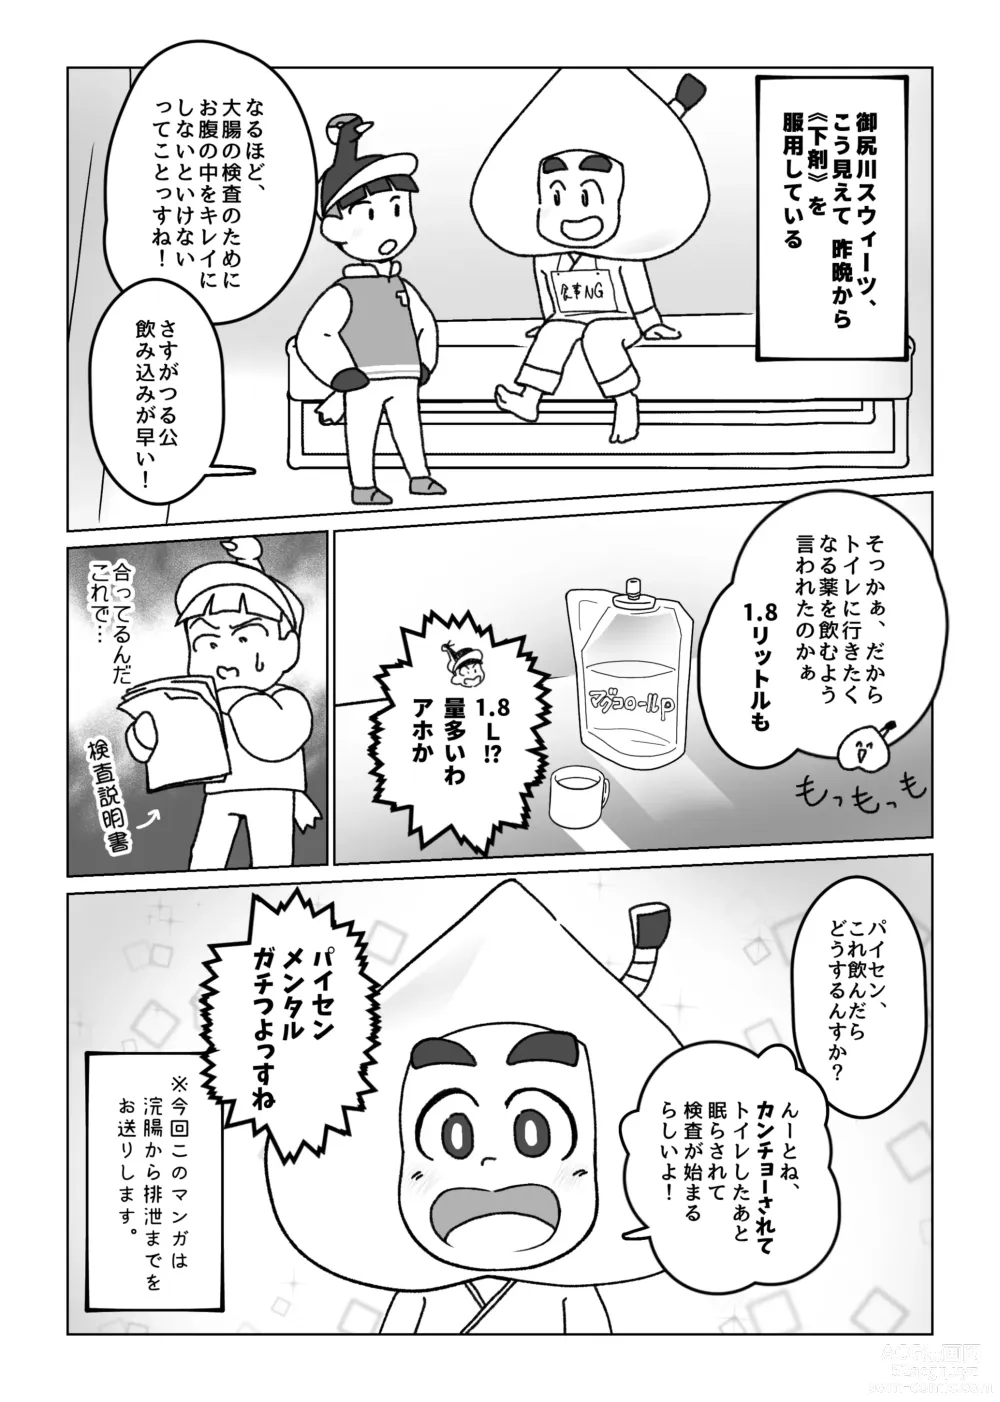 Page 3 of doujinshi Kikou Sairoku / Suui Dappun Ansoro Yori Furenzu